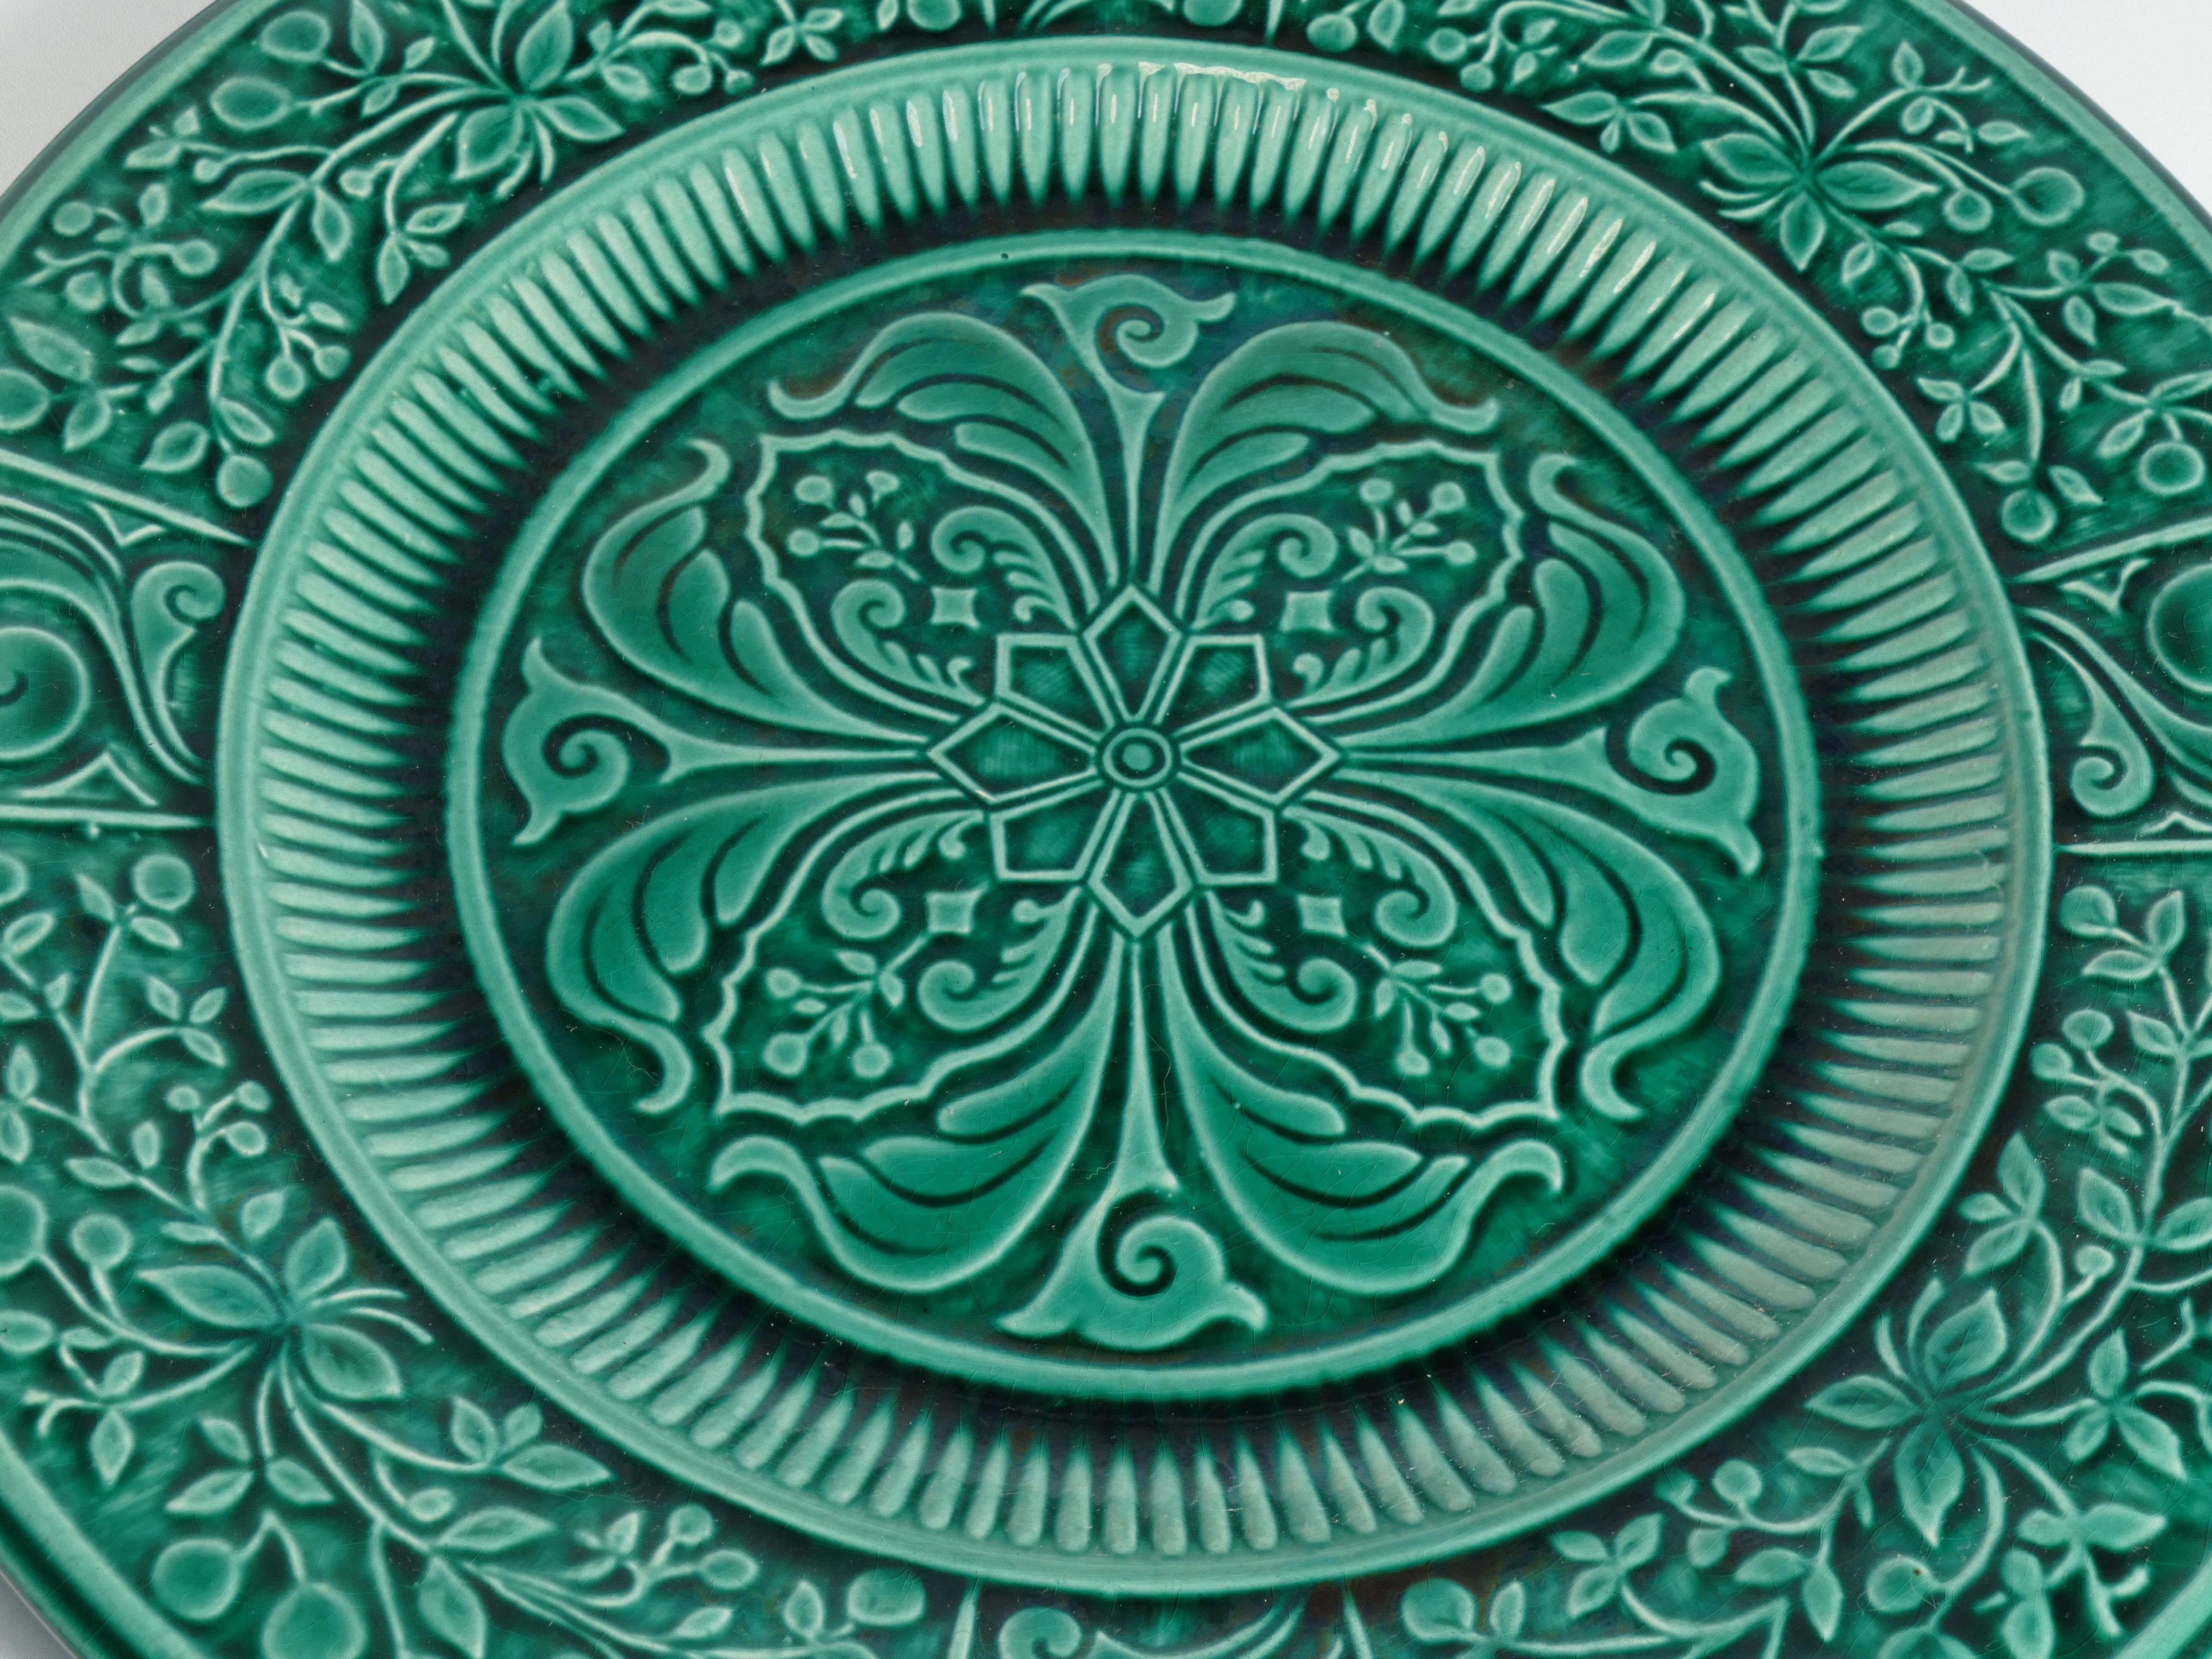 Unglaublich schöner großer skandinavischer moderner grüner Teller mit Muster aus Arol Keramik, Halden Norwegen, 1950er Jahre.

Arol Keramische Fabrik 1943-1980
Zwei kreative Köpfe taten sich zusammen und gründeten das, was später die Keramikfabrik